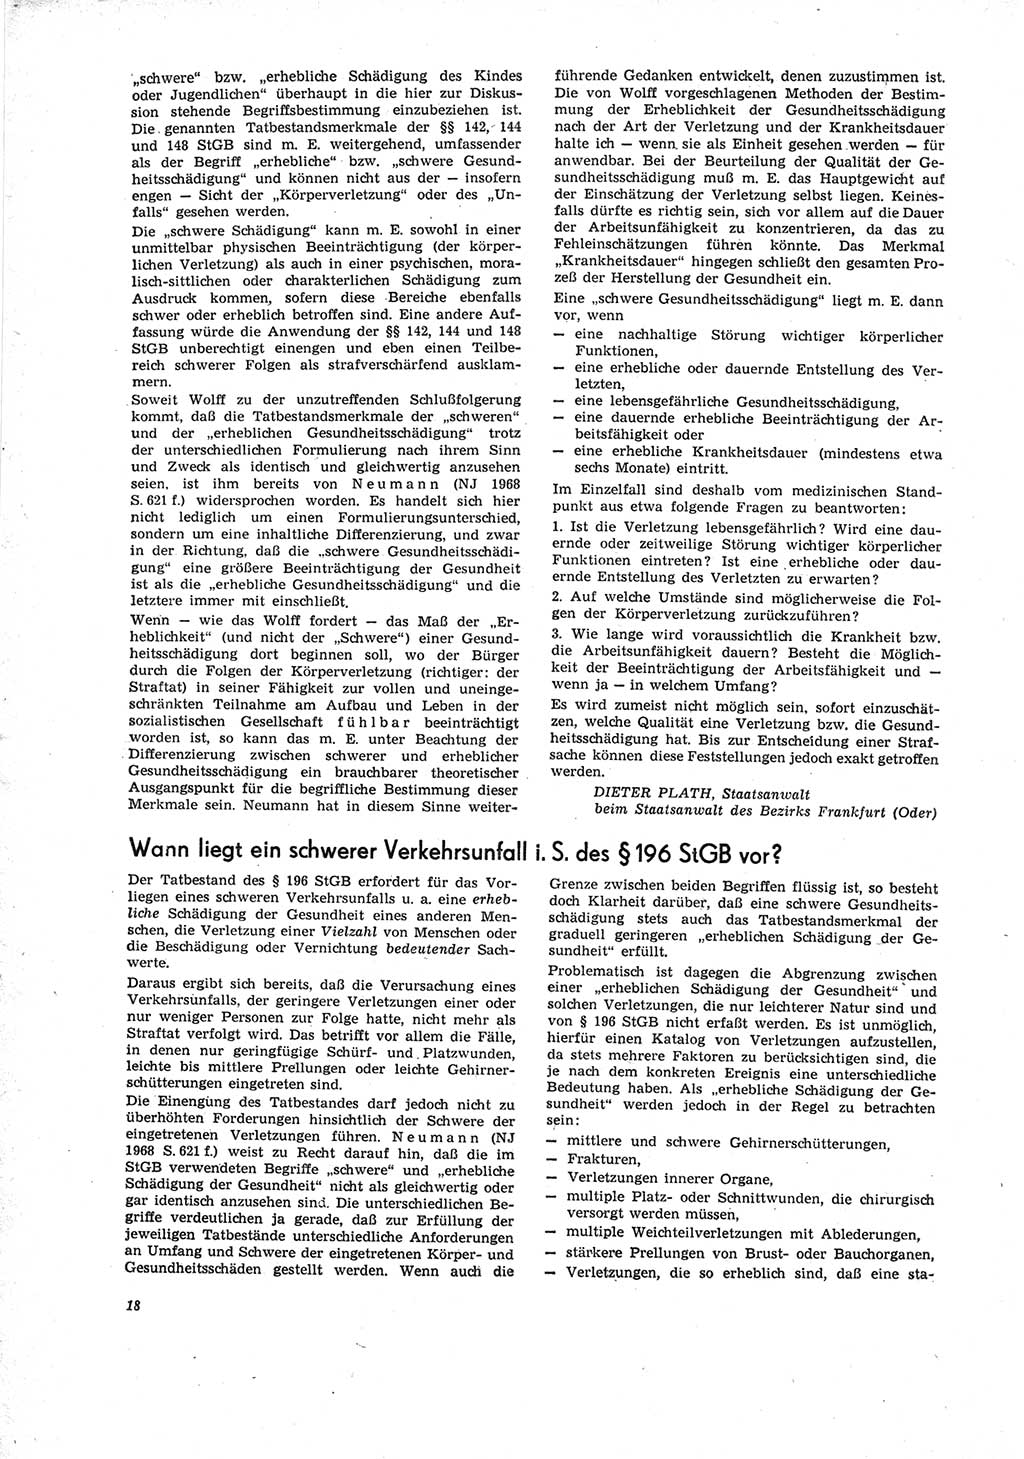 Neue Justiz (NJ), Zeitschrift für Recht und Rechtswissenschaft [Deutsche Demokratische Republik (DDR)], 23. Jahrgang 1969, Seite 18 (NJ DDR 1969, S. 18)